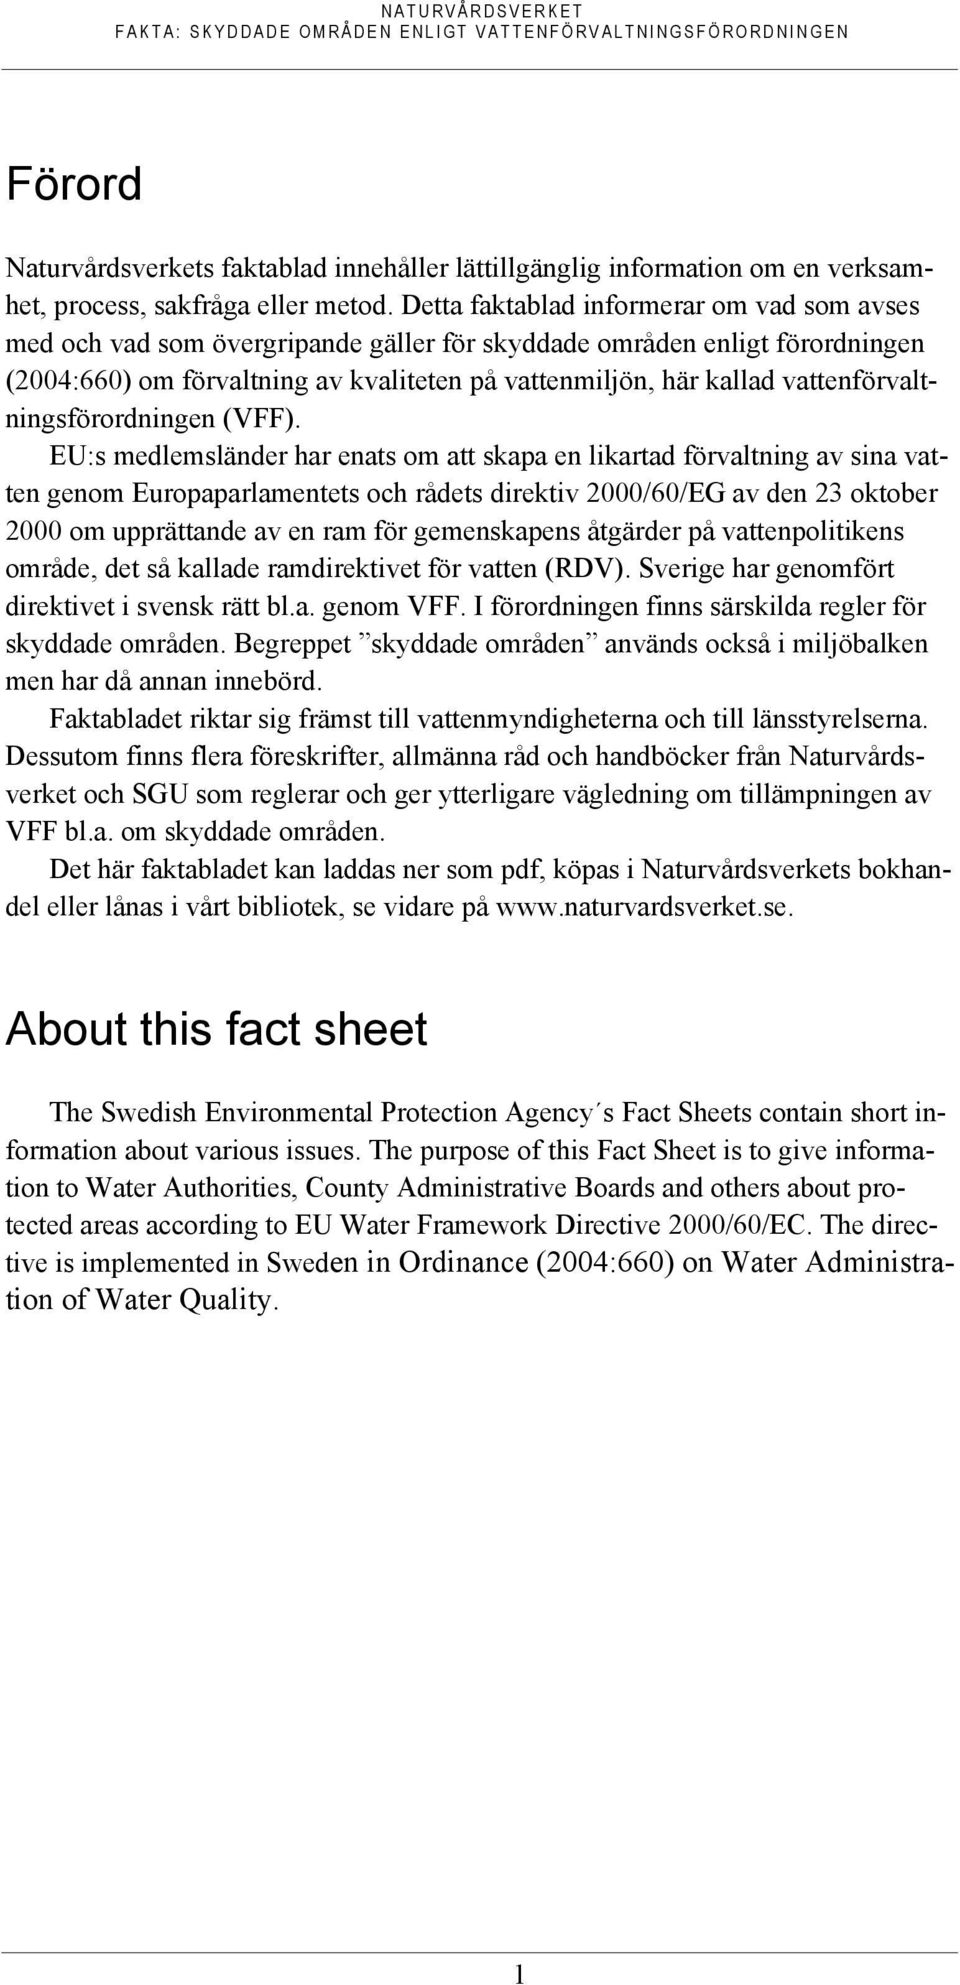 vattenförvaltningsförordningen (VFF).